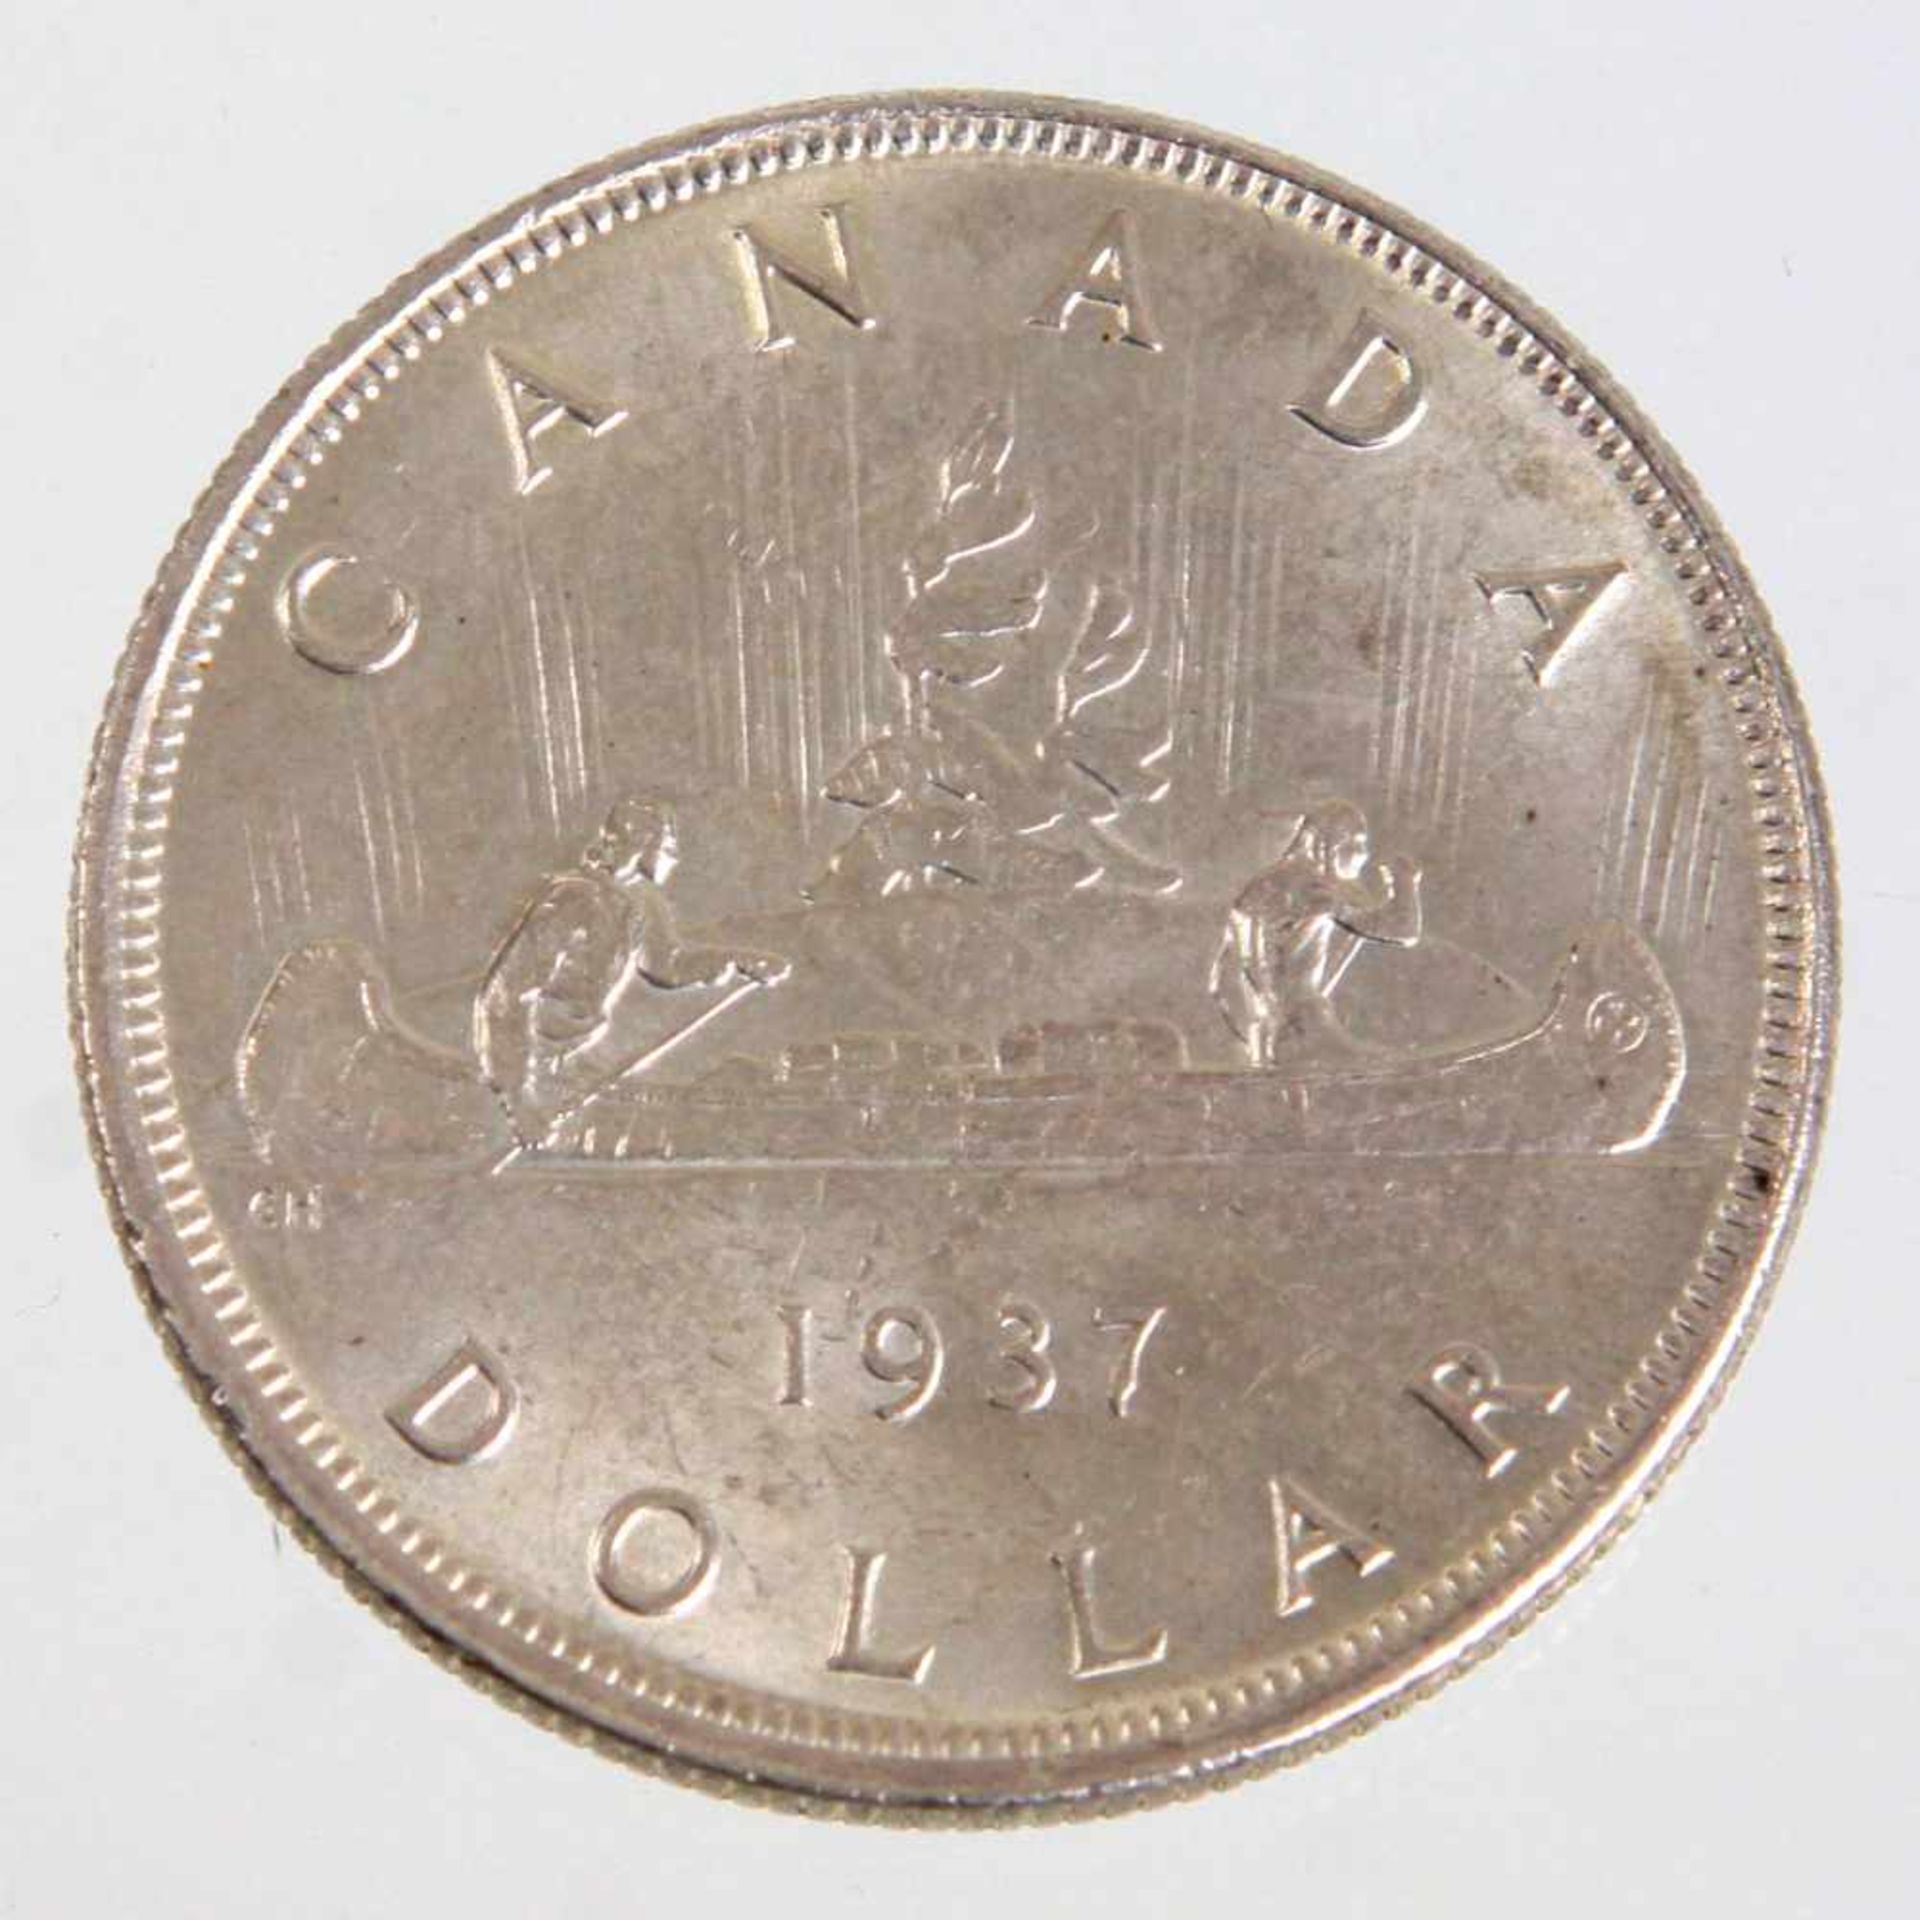 Canada Dollar 1937Silbermünze Canada Dollar mit Voyageur Kanu u. Georg VI, Ø ca. 36 mm, Gewicht - Bild 2 aus 2